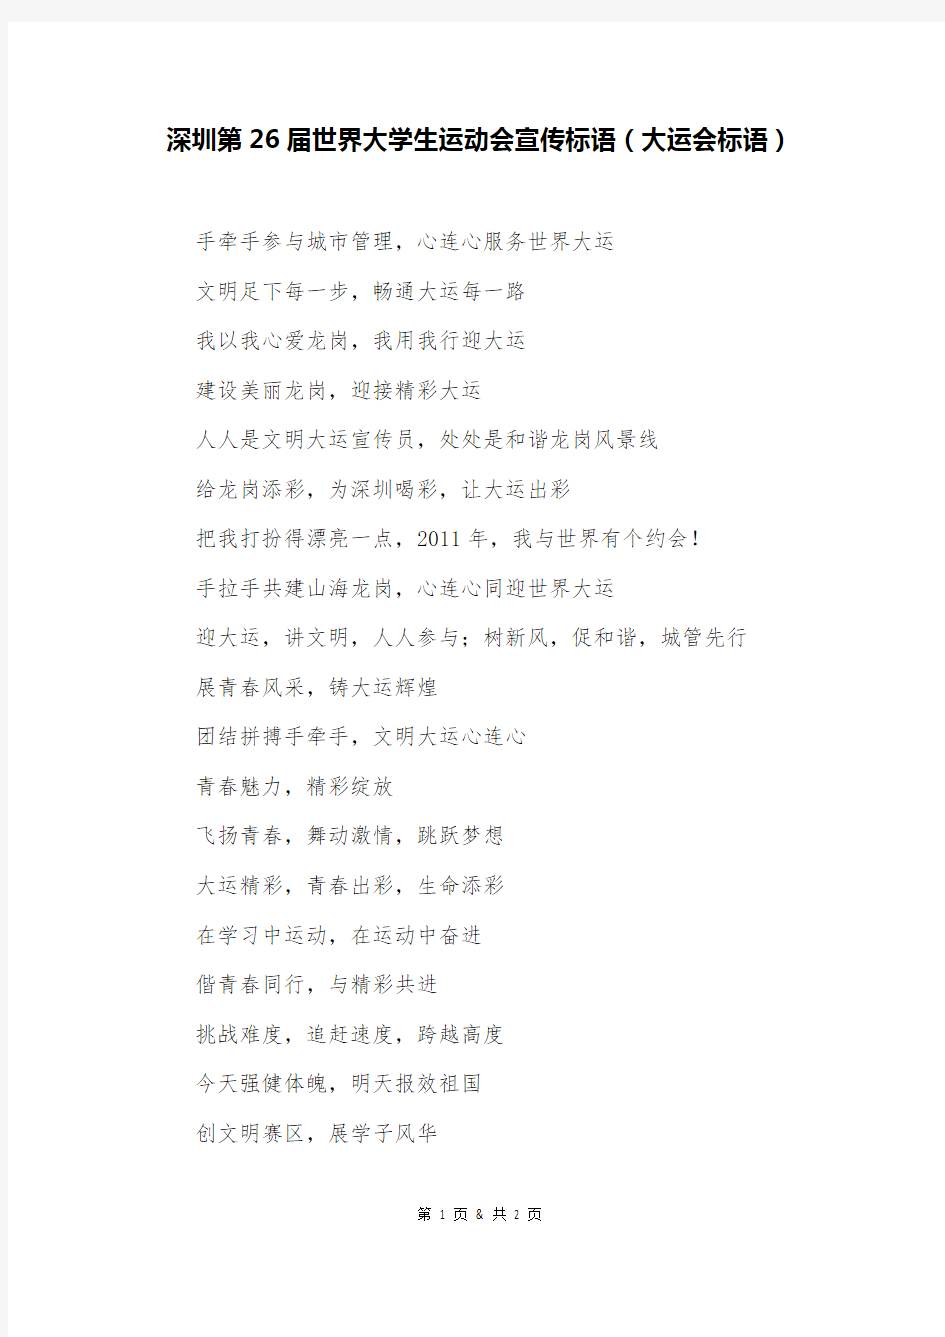 深圳第26届世界大学生运动会宣传标语(大运会标语)